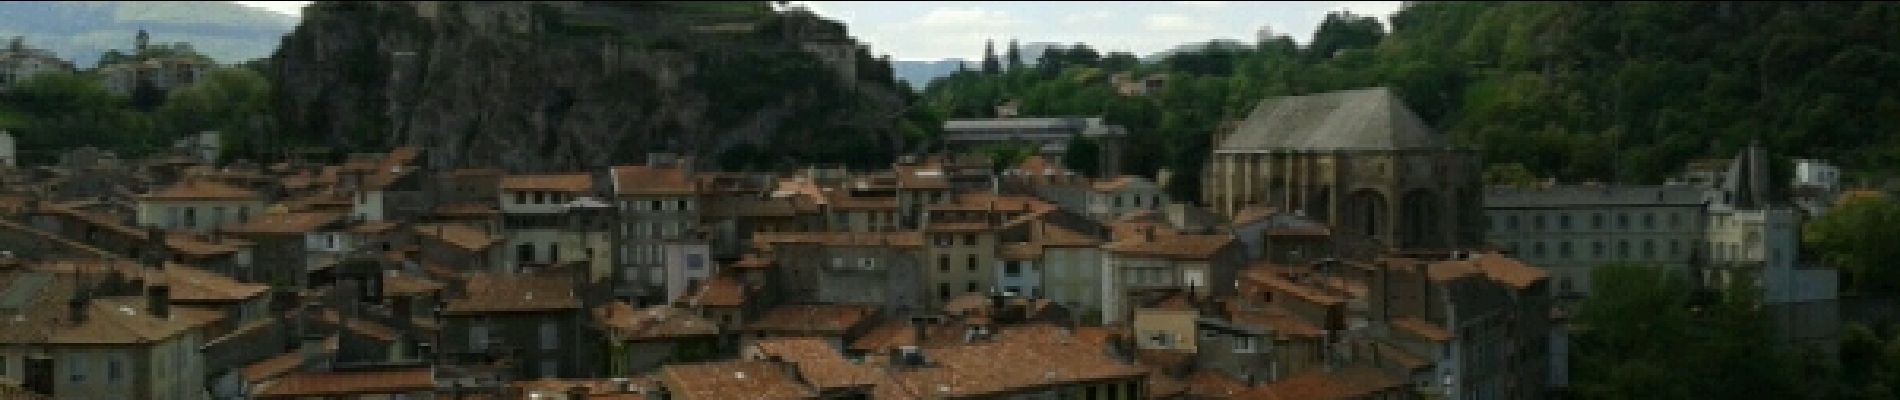 Tour Wandern Foix - pech de foix - Photo